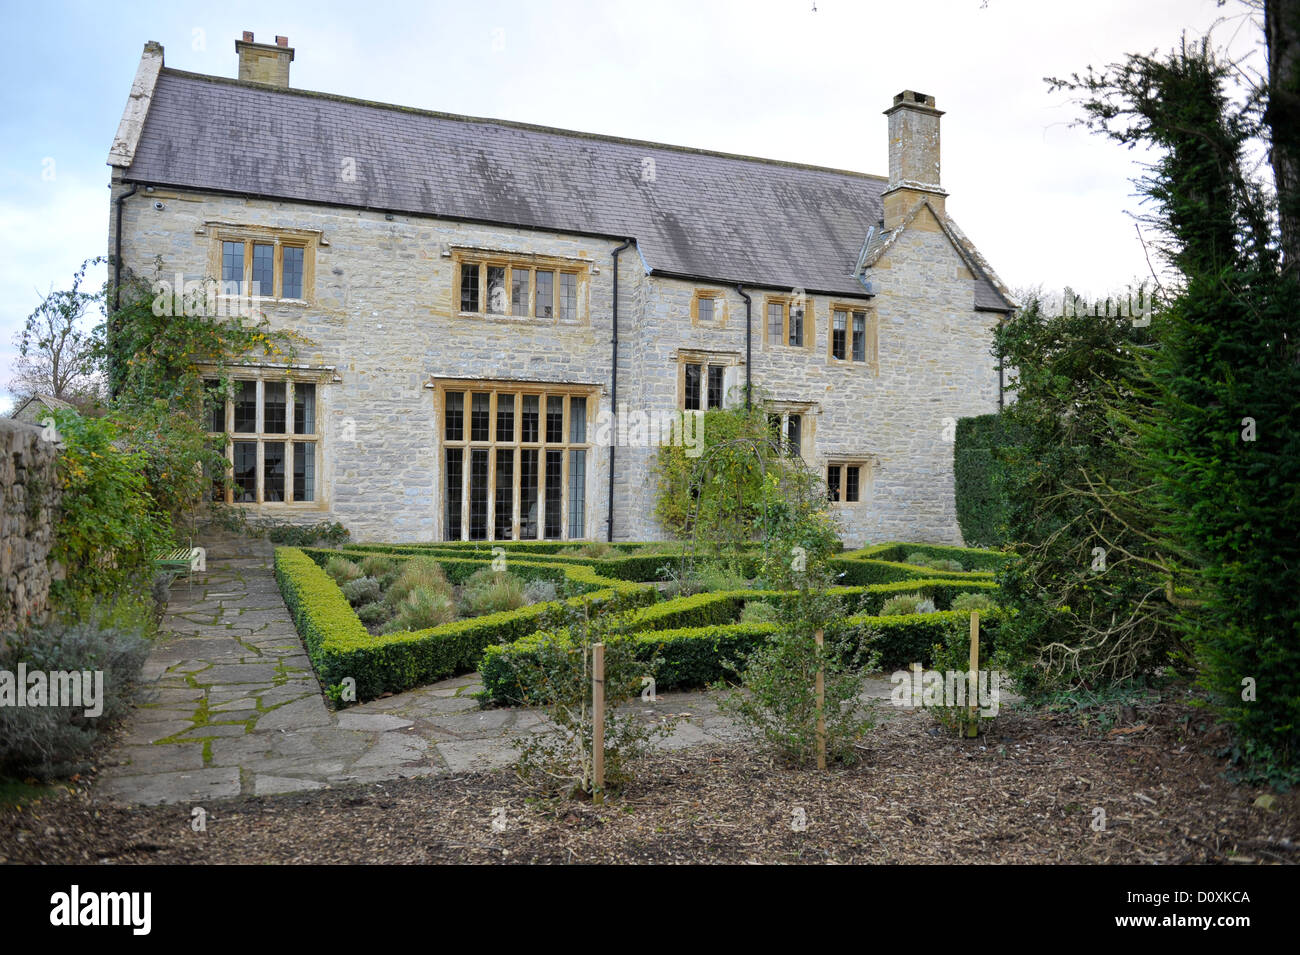 Un pays rural maison dans la campagne anglaise qui comprend des éléments architecturaux et des terrains Banque D'Images